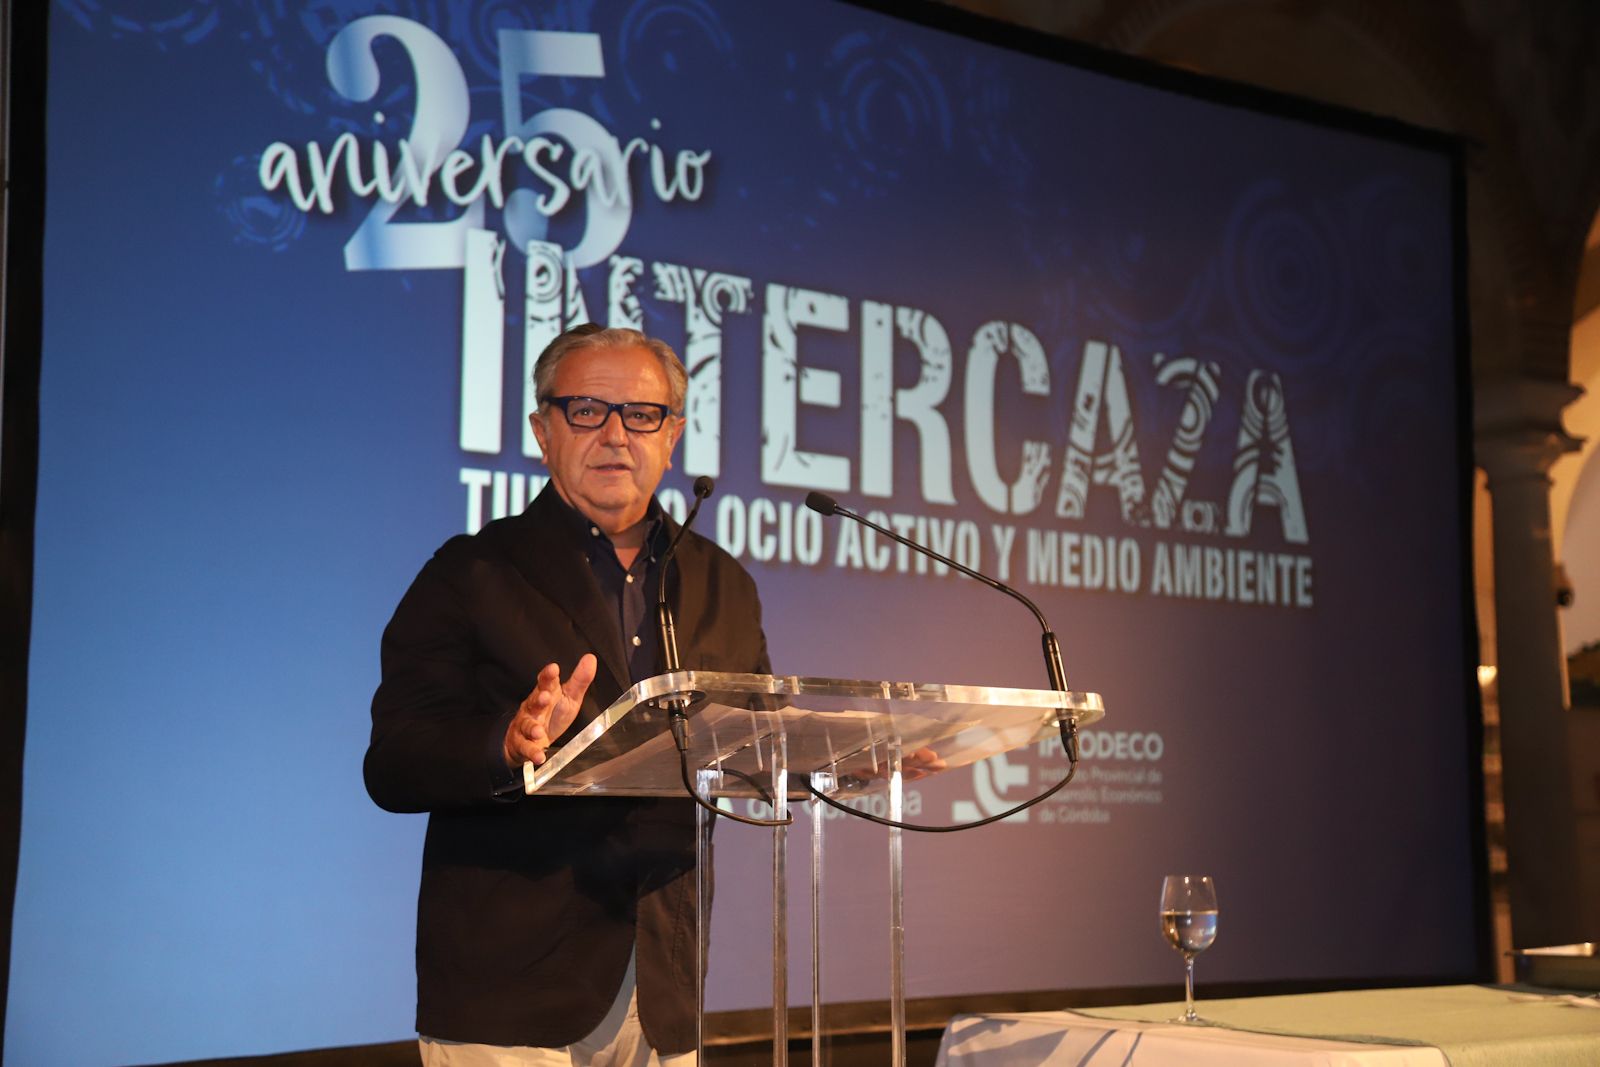 Un showcooking inaugura el 25 aniversario de Intercaza